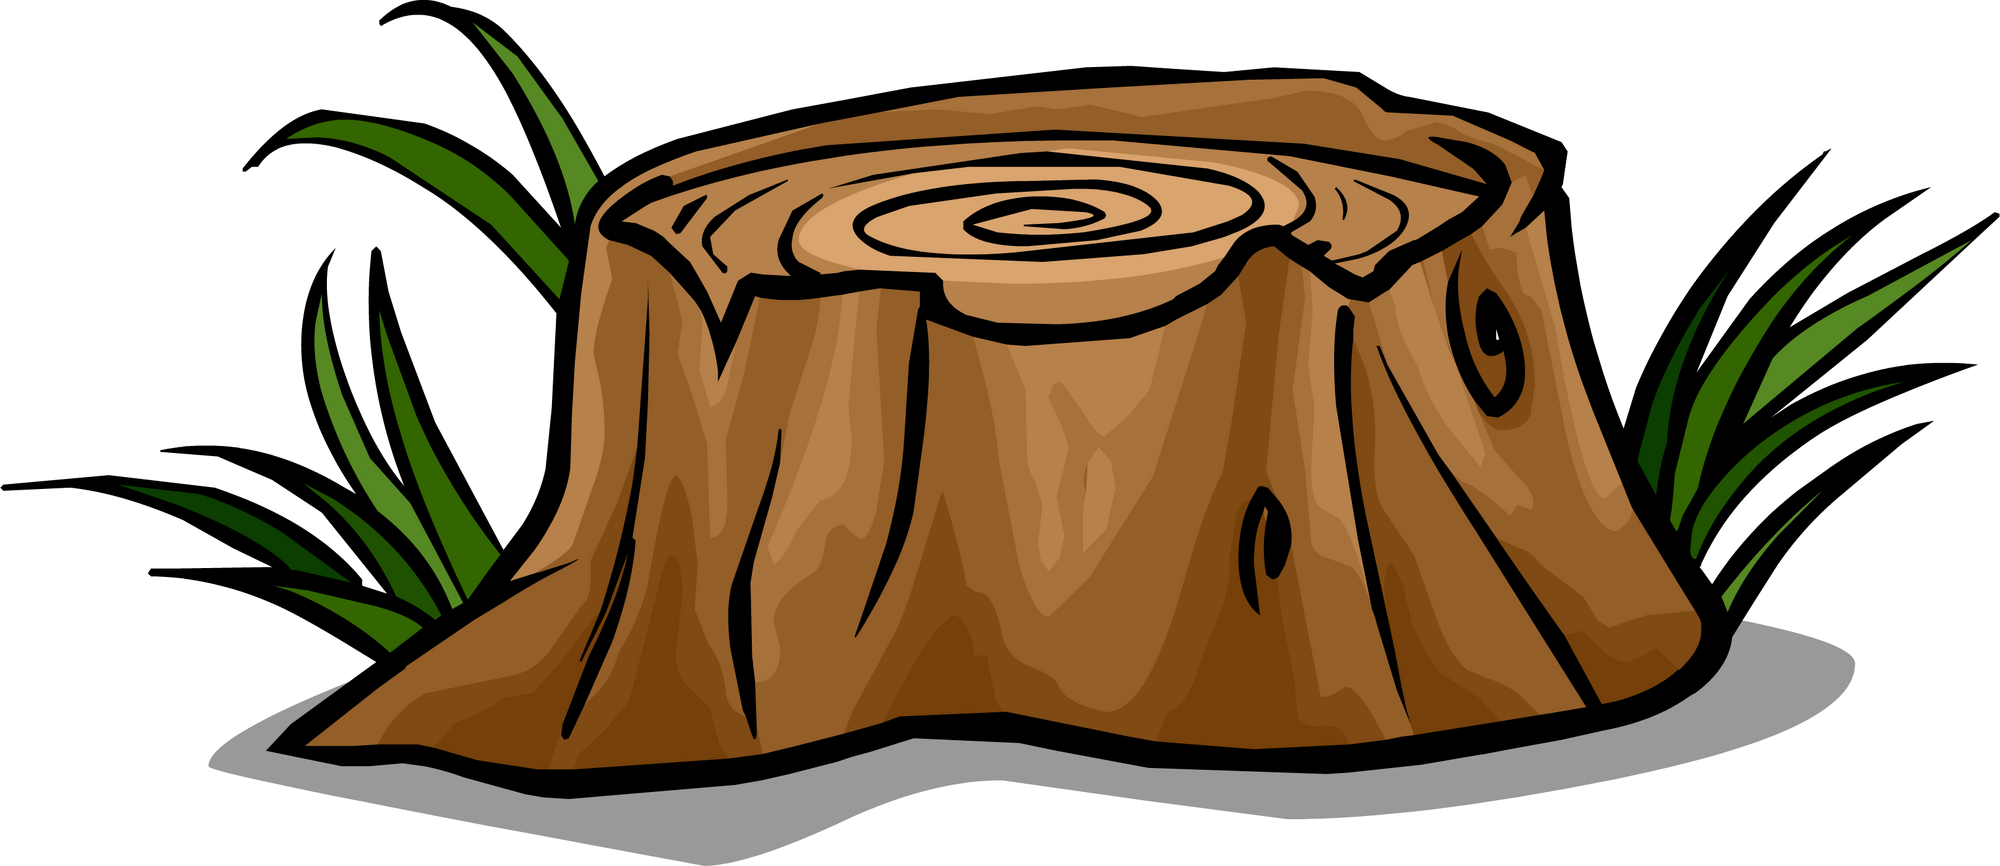 Tree Stump | Club Penguin Wiki | Fandom powered by Wikia